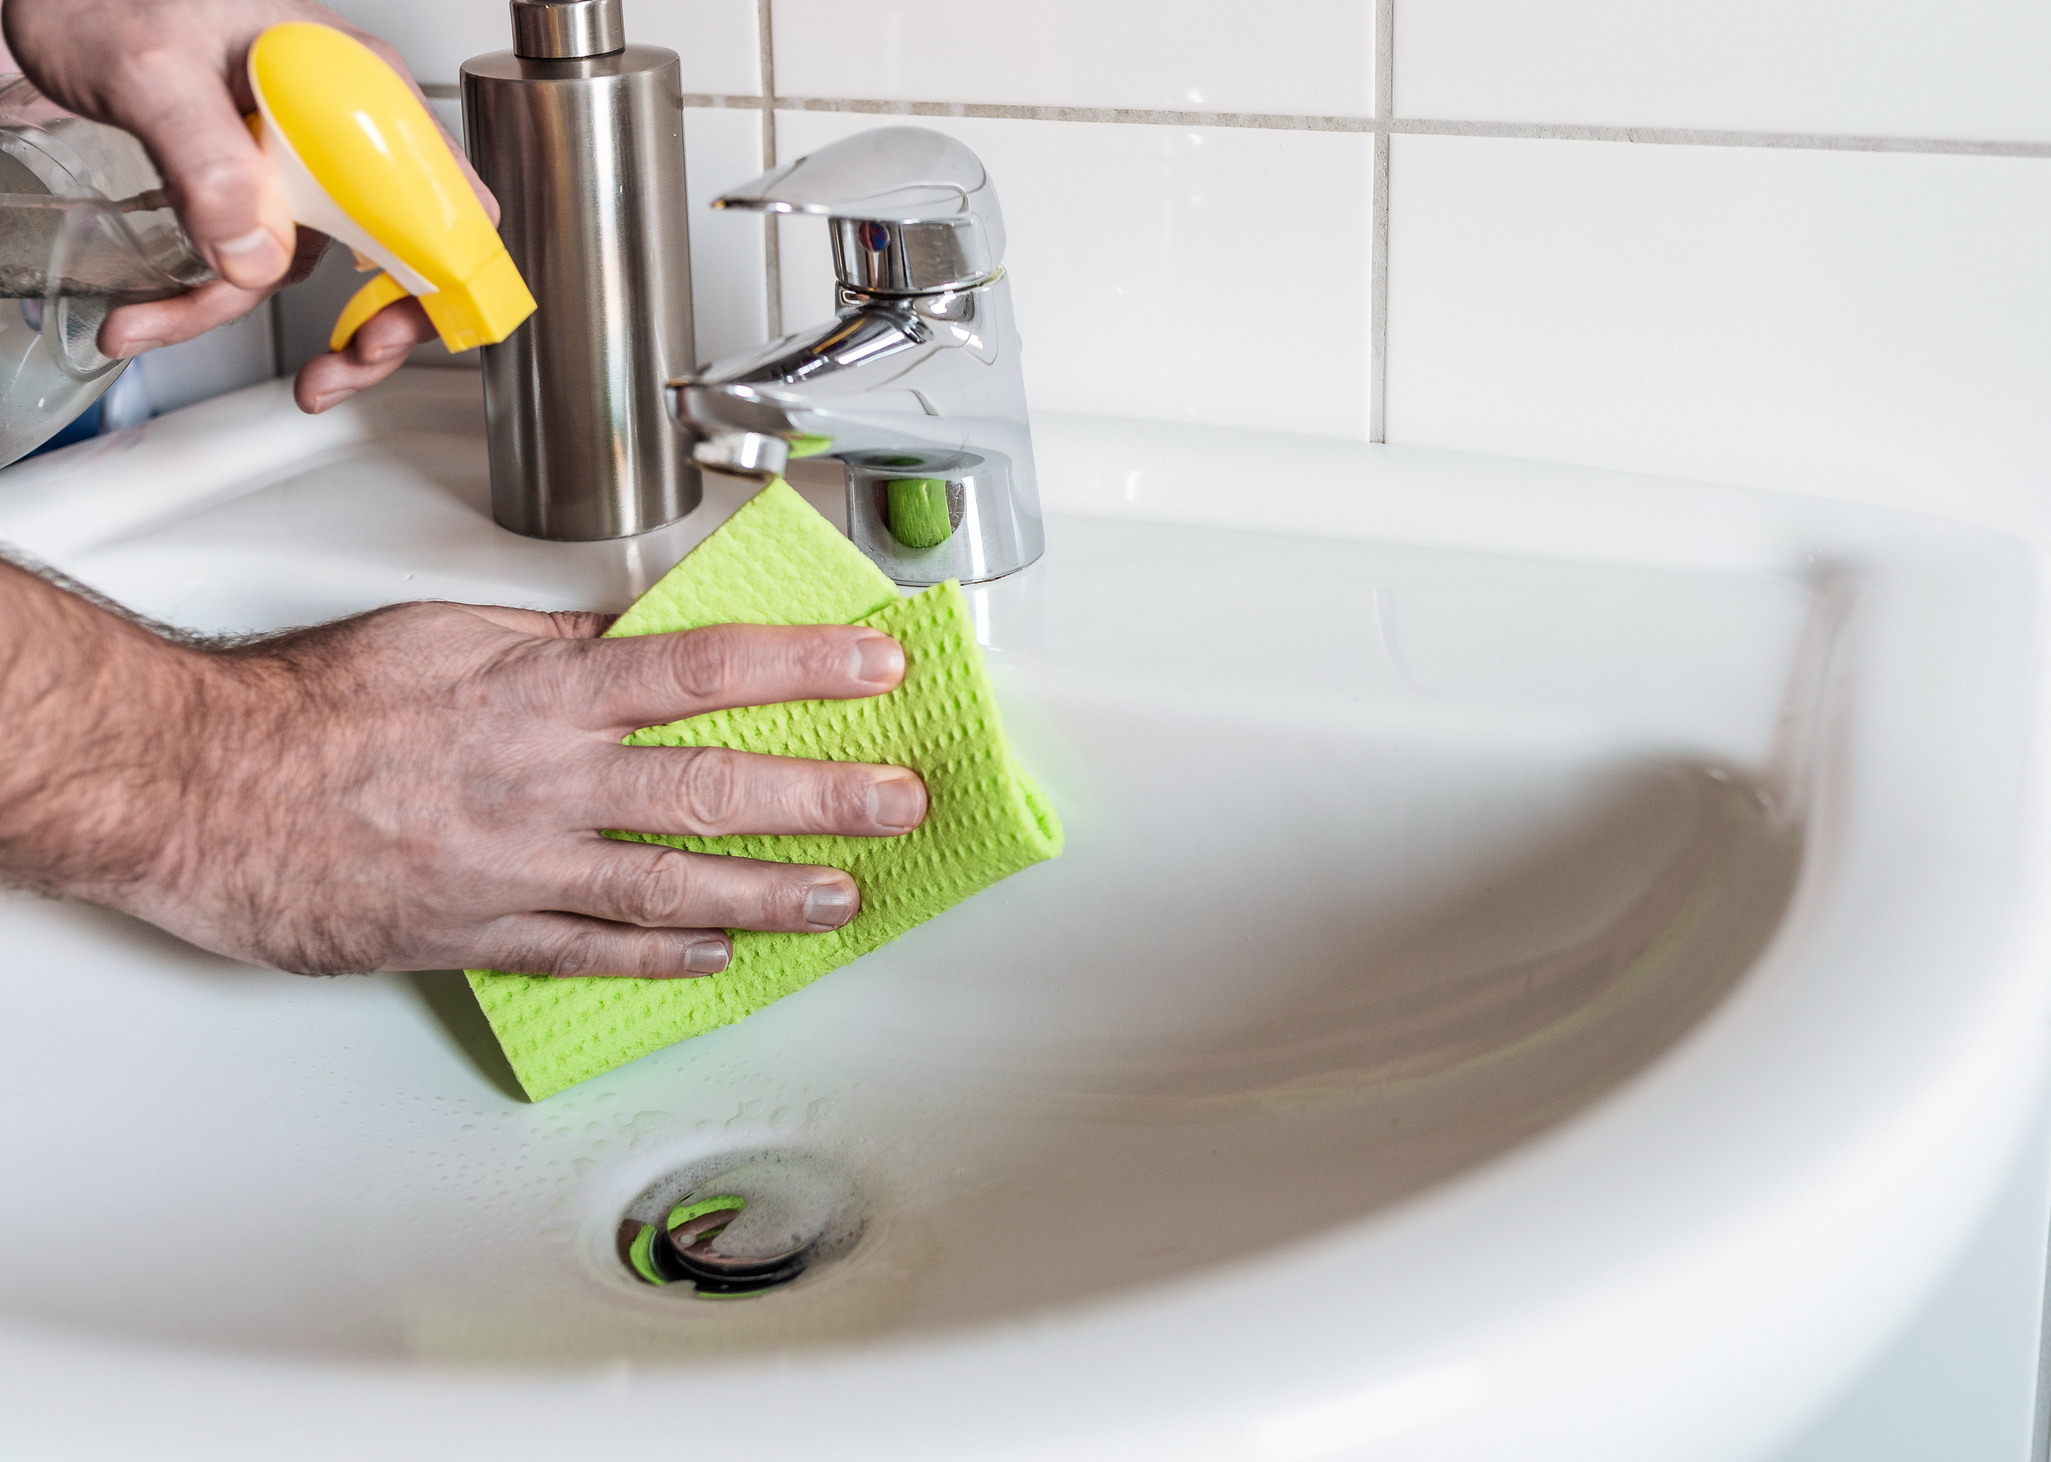 Comment nettoyer sa salle de bain efficacement?